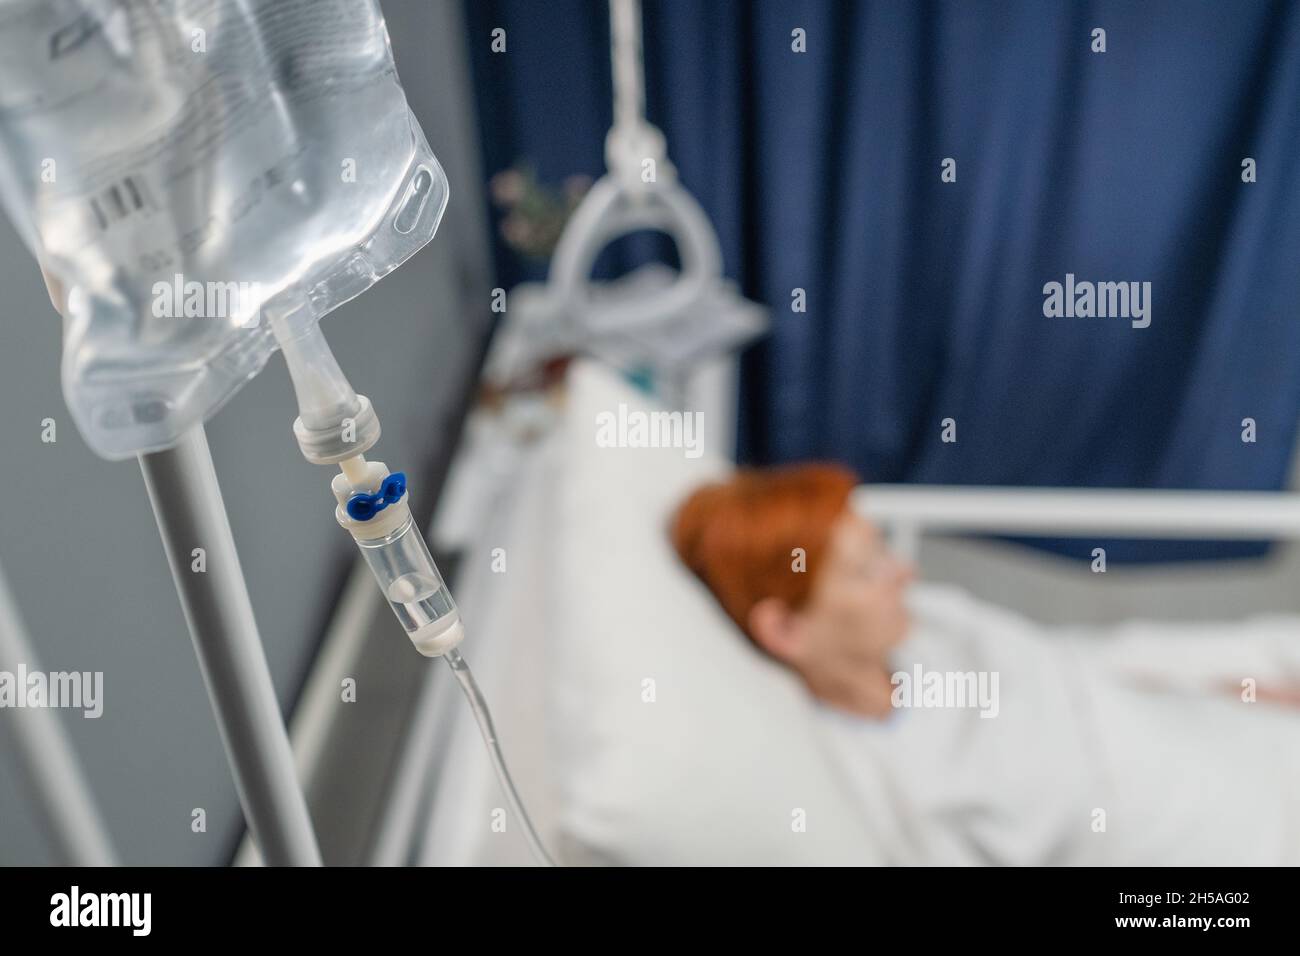 Nahaufnahme eines infusionstropfes, der über dem Bett hängt, mit dem Patienten auf der Krankenhausstation Stockfoto